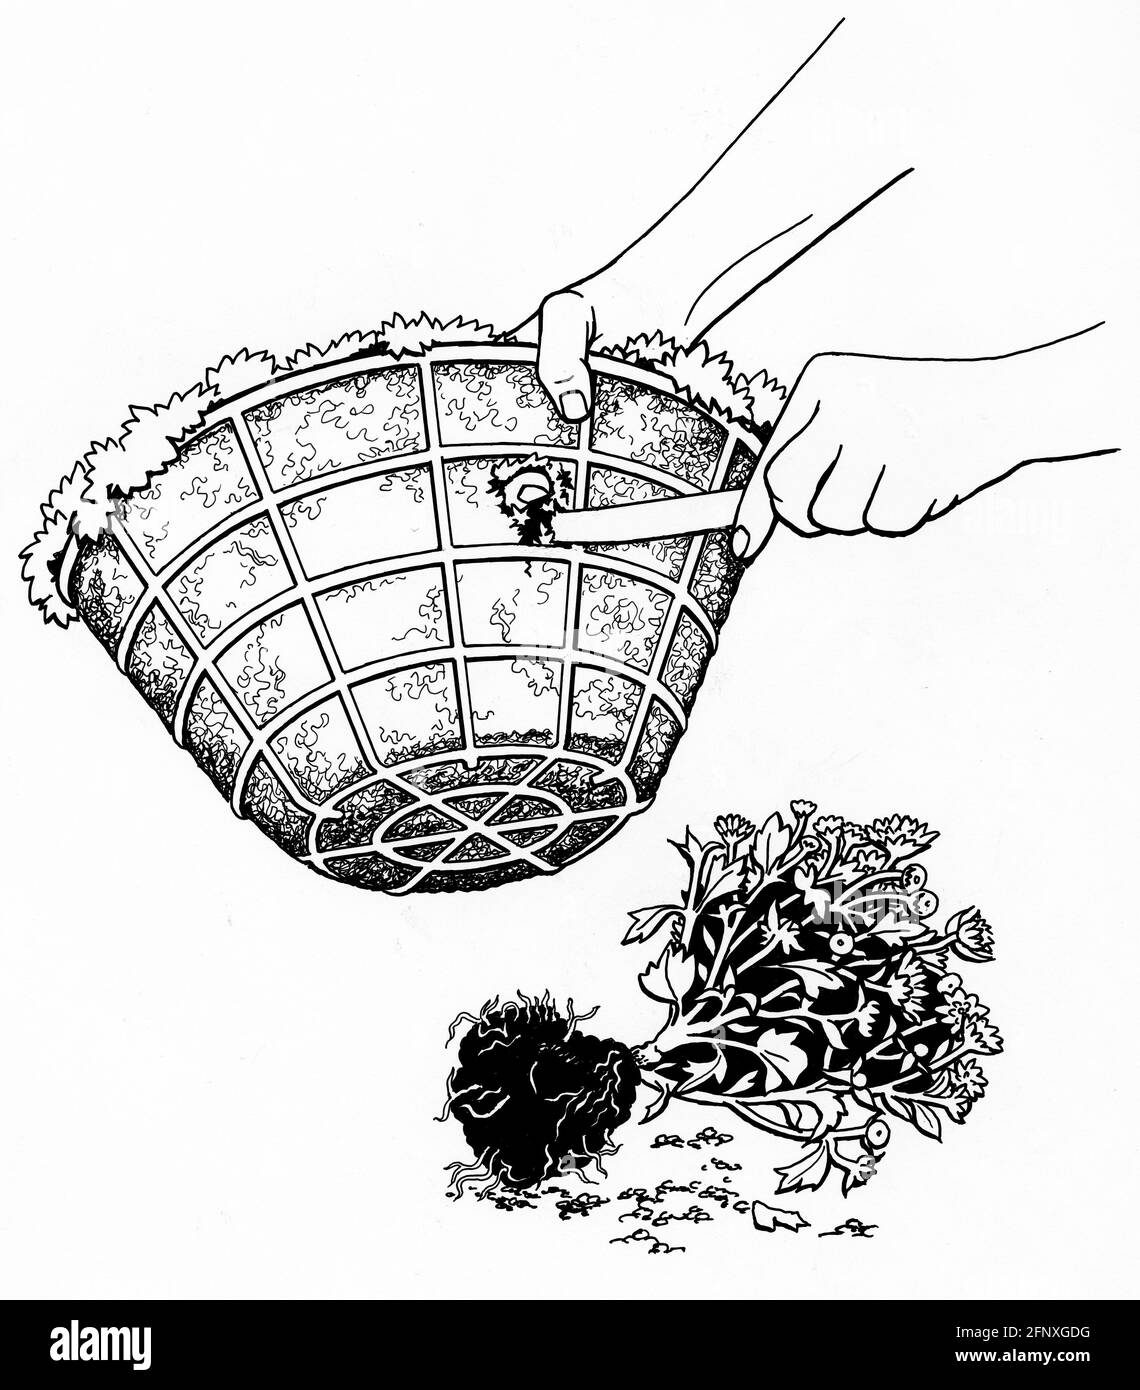 un dessin d'une paire de mains top plantant un panier suspendu équipé d'une doublure en mousse sphaigne Banque D'Images